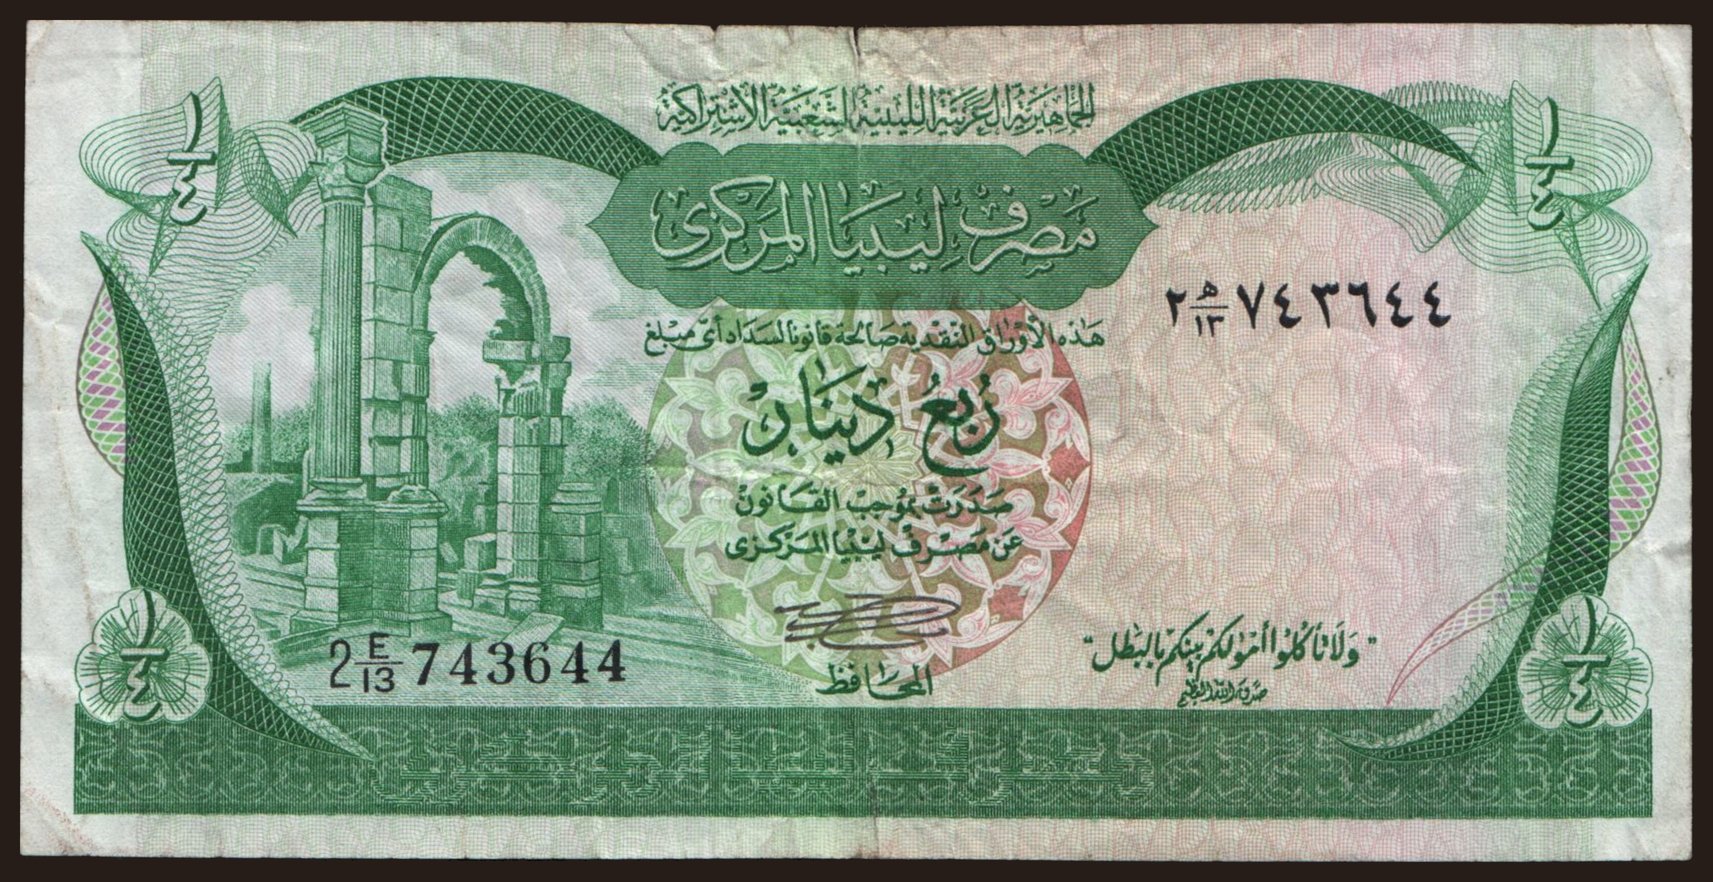 1/4 dinar, 1981